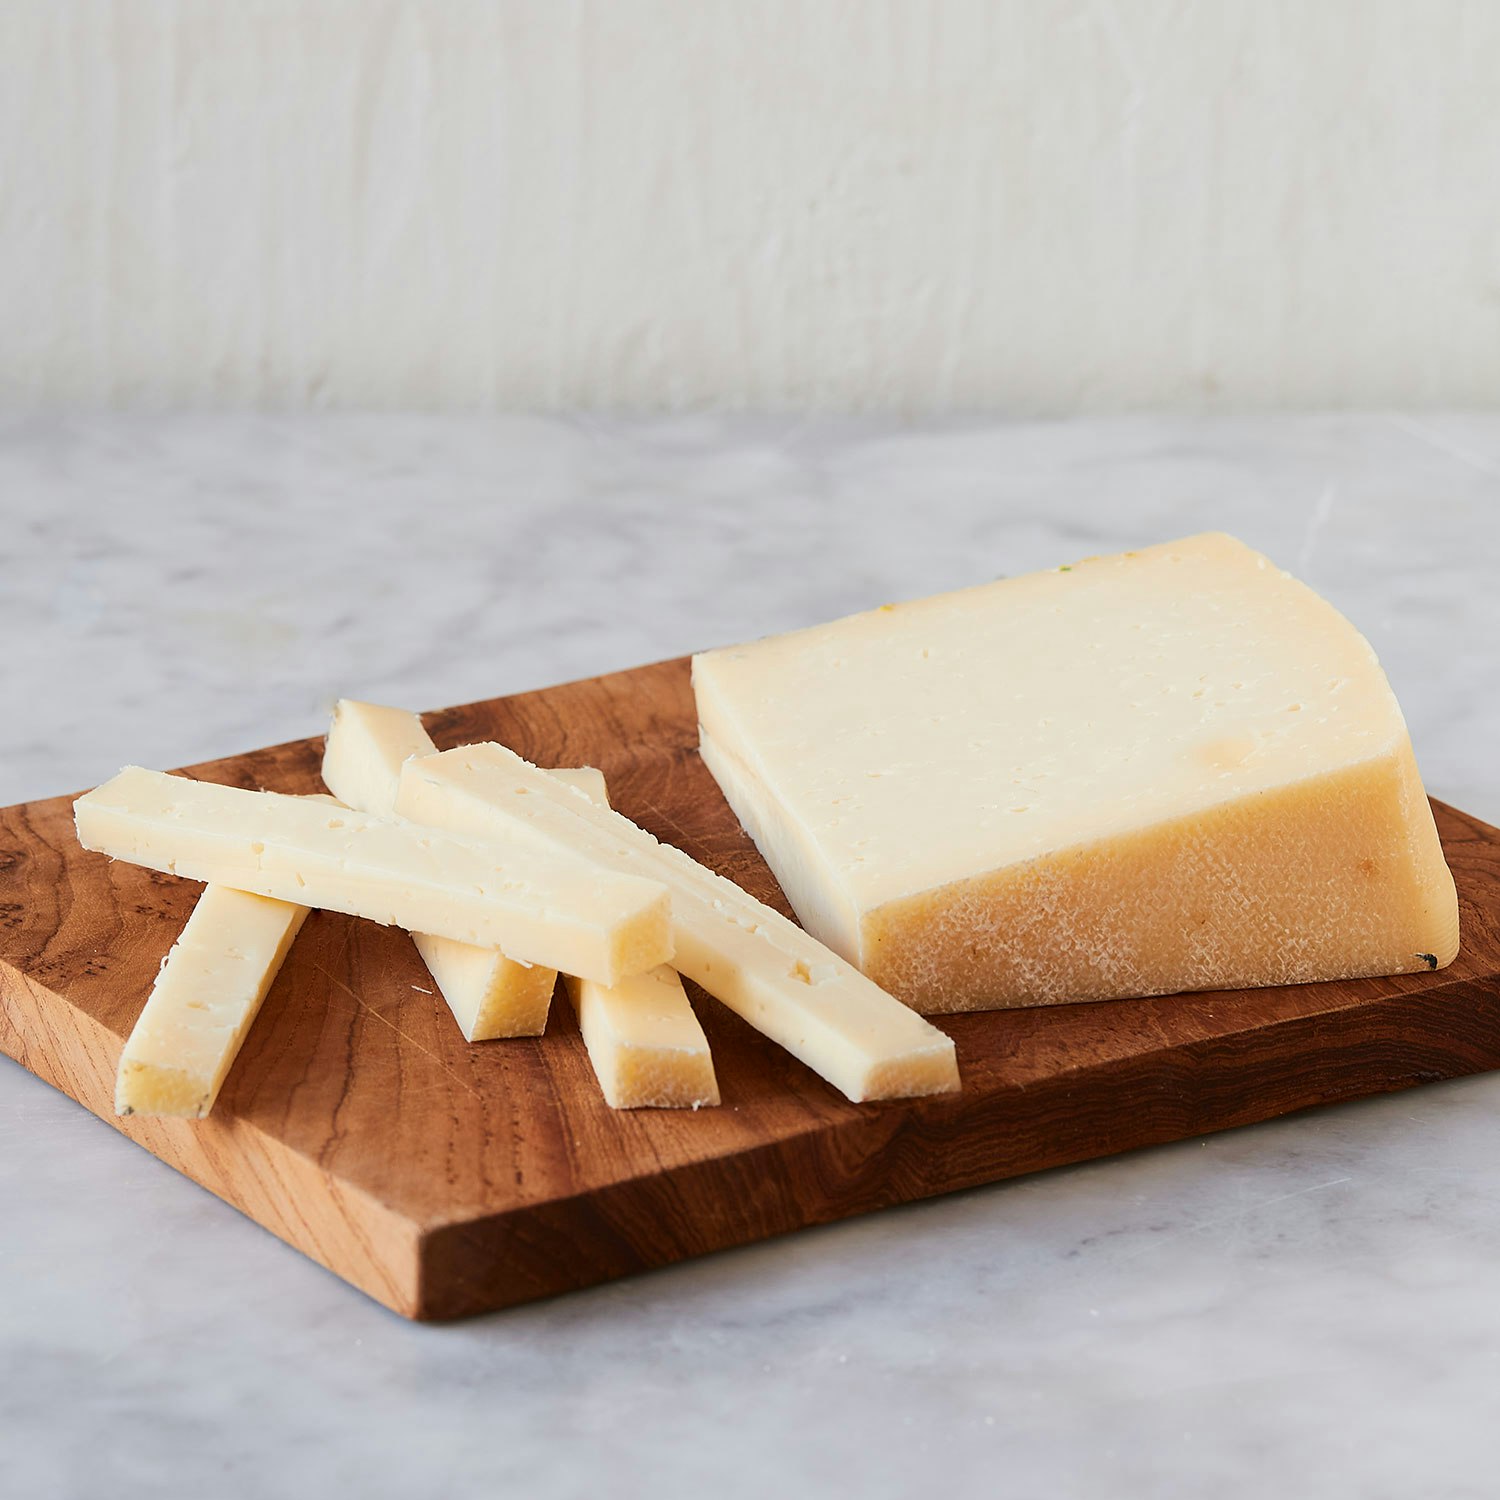 asiago pressato cheese